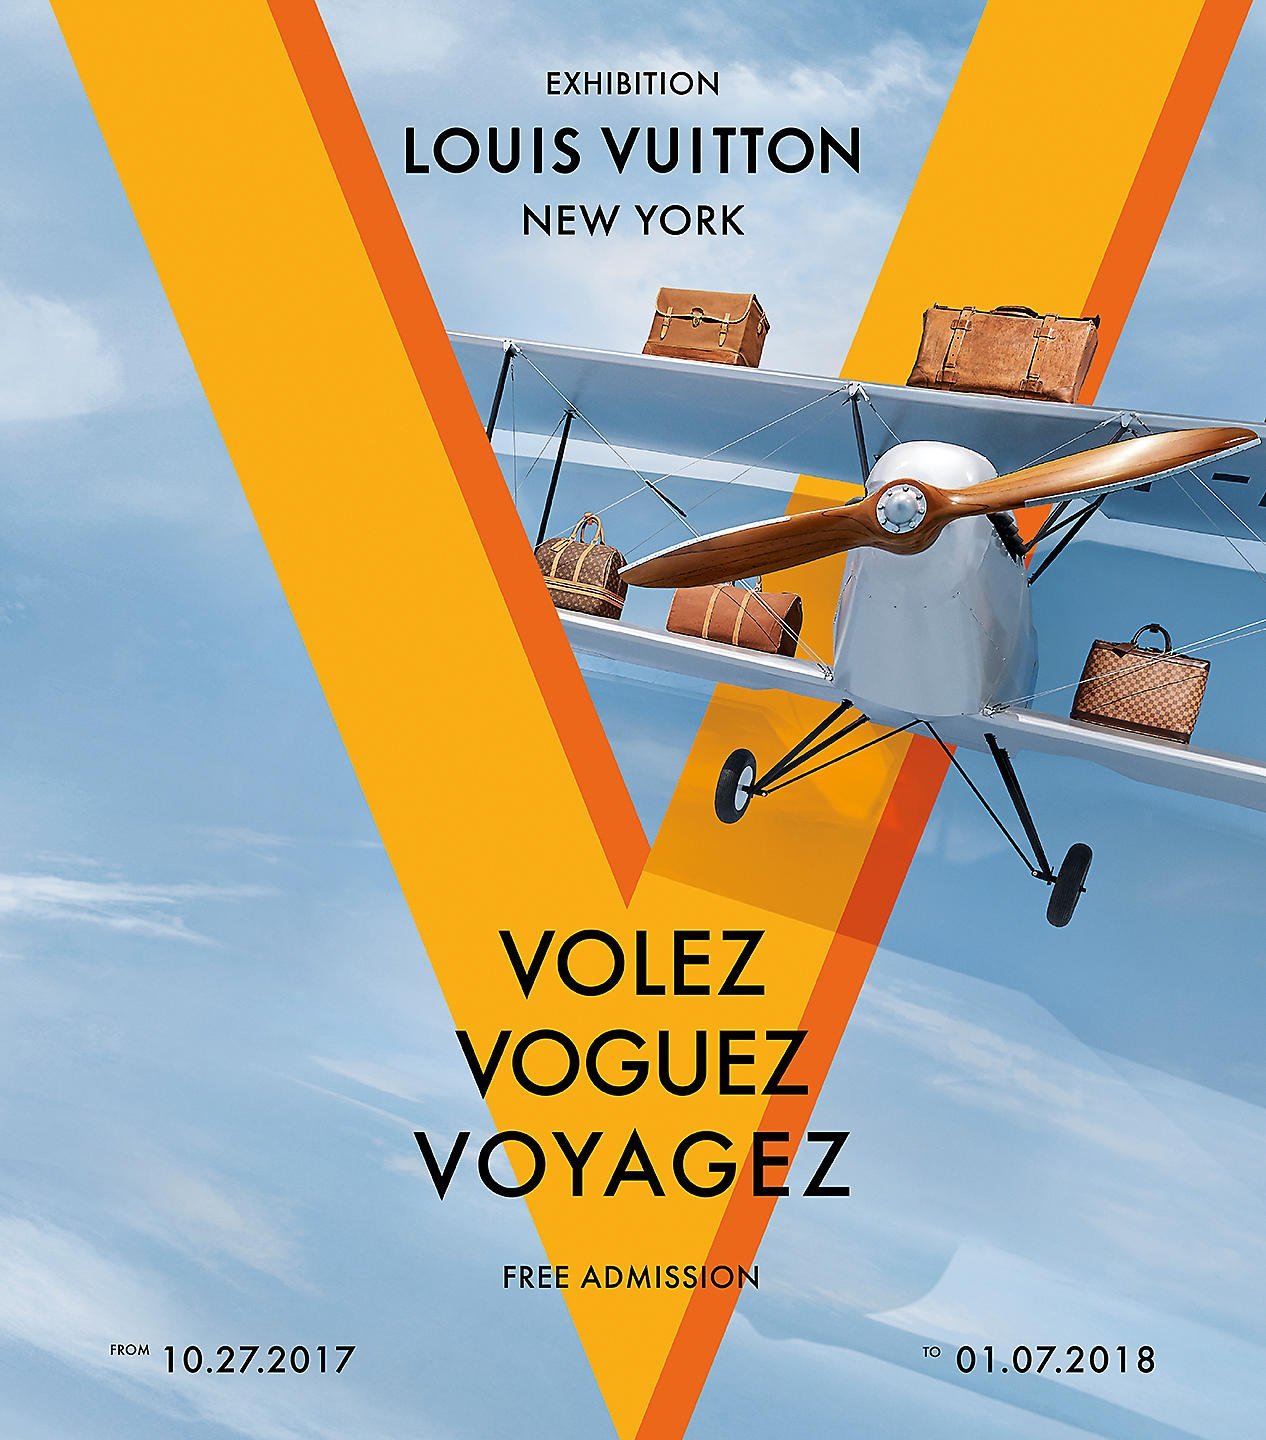 Photo Courtesy: Louis Vuitton